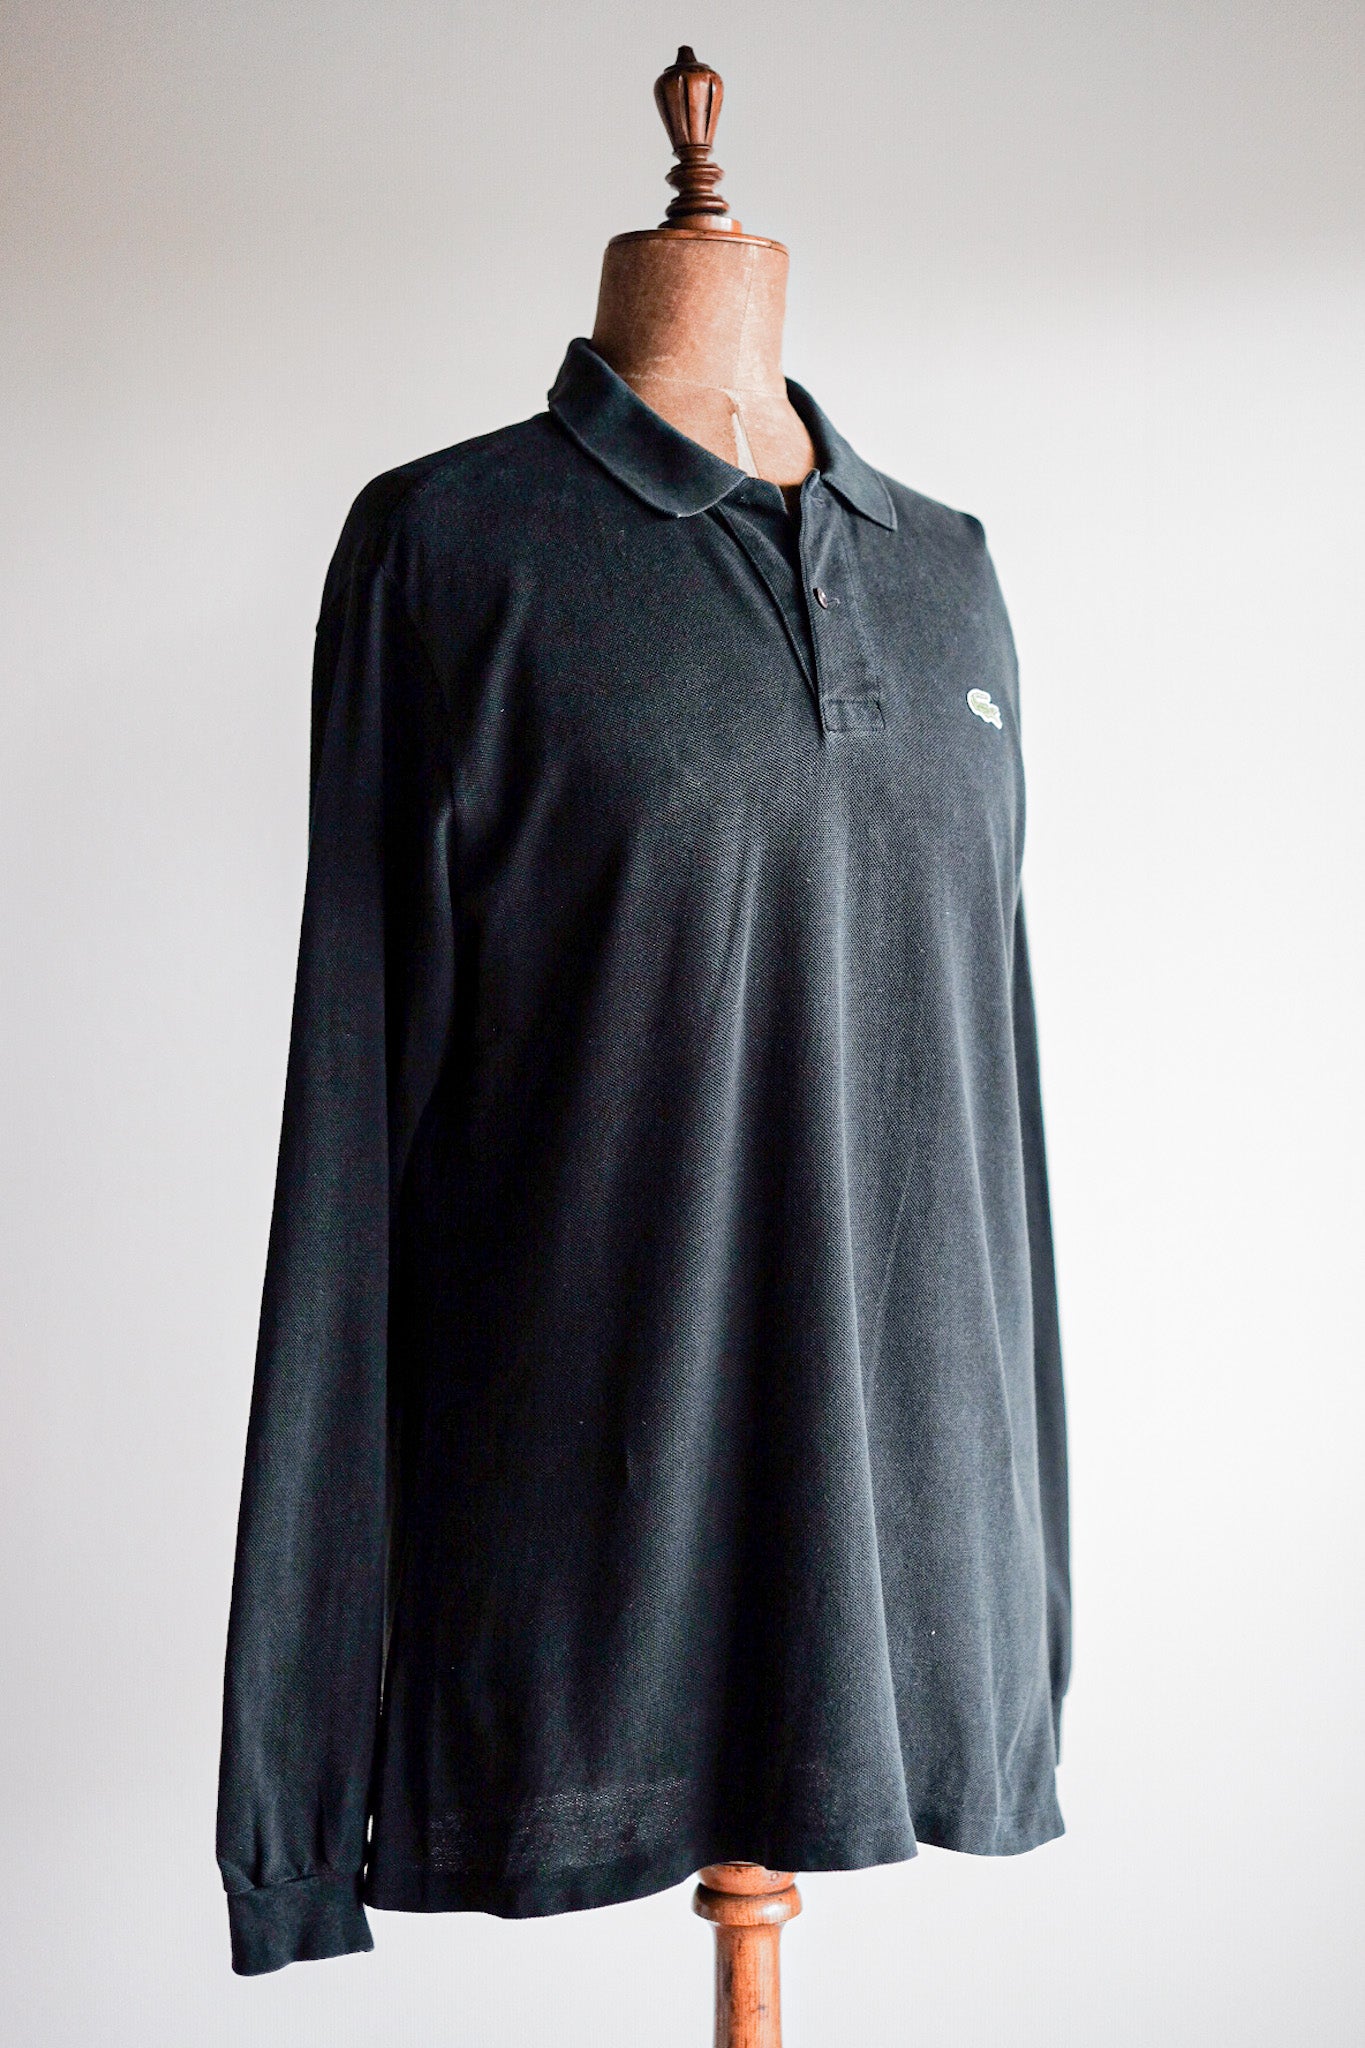 【~80's】CHEMISE LACOSTE L/S Polo Shirt Size.5 "Black"